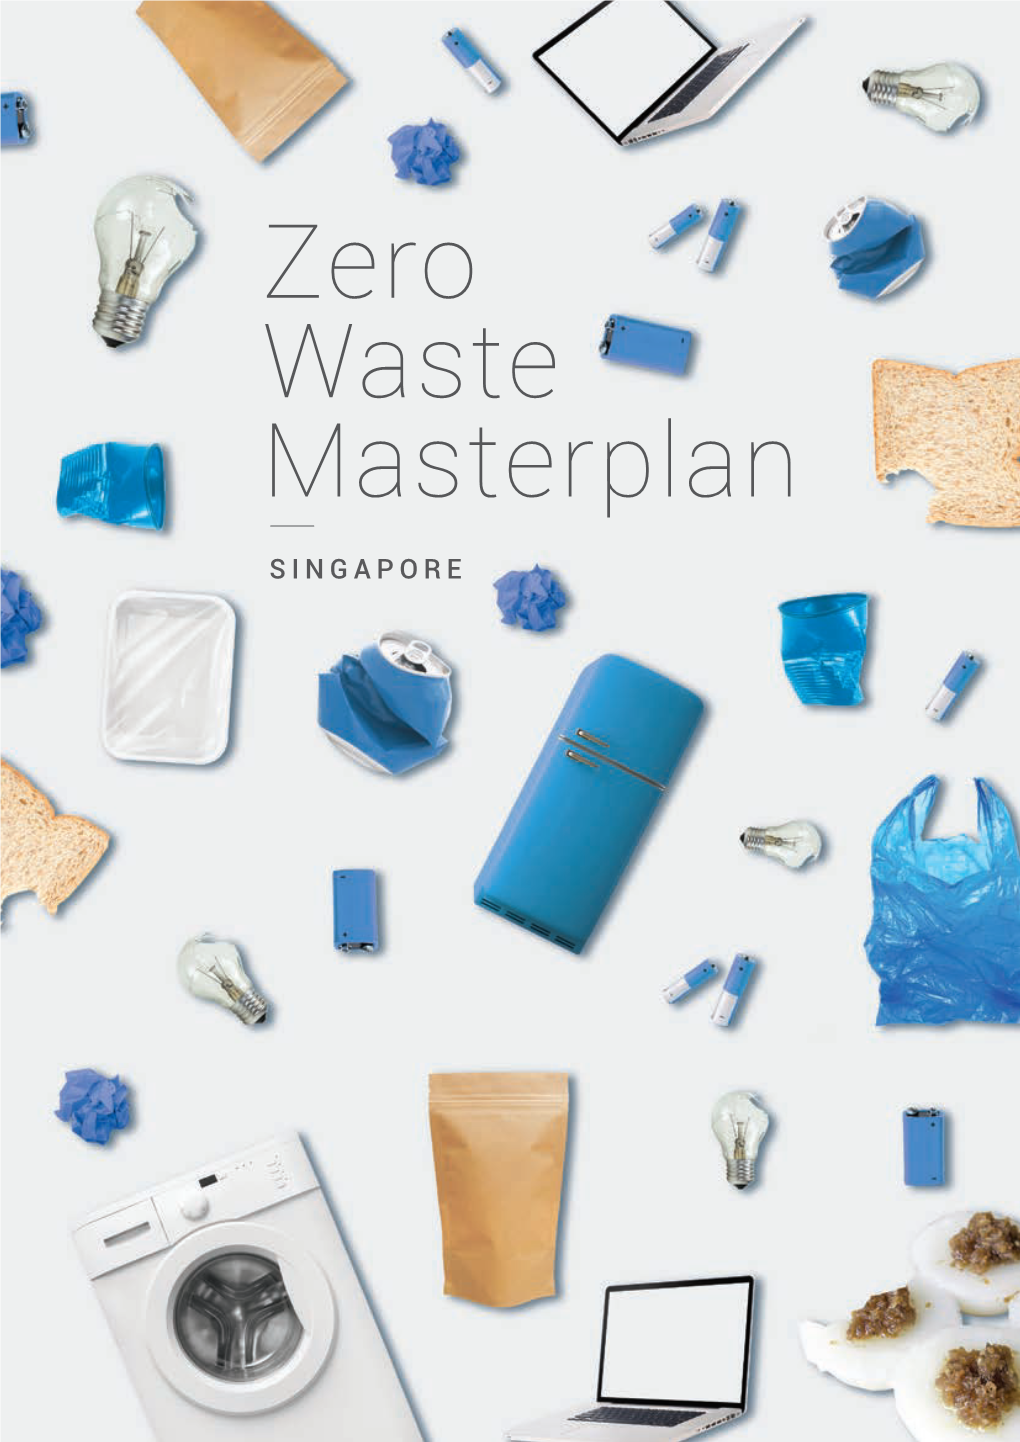 Zero Waste Masterplan Singapore